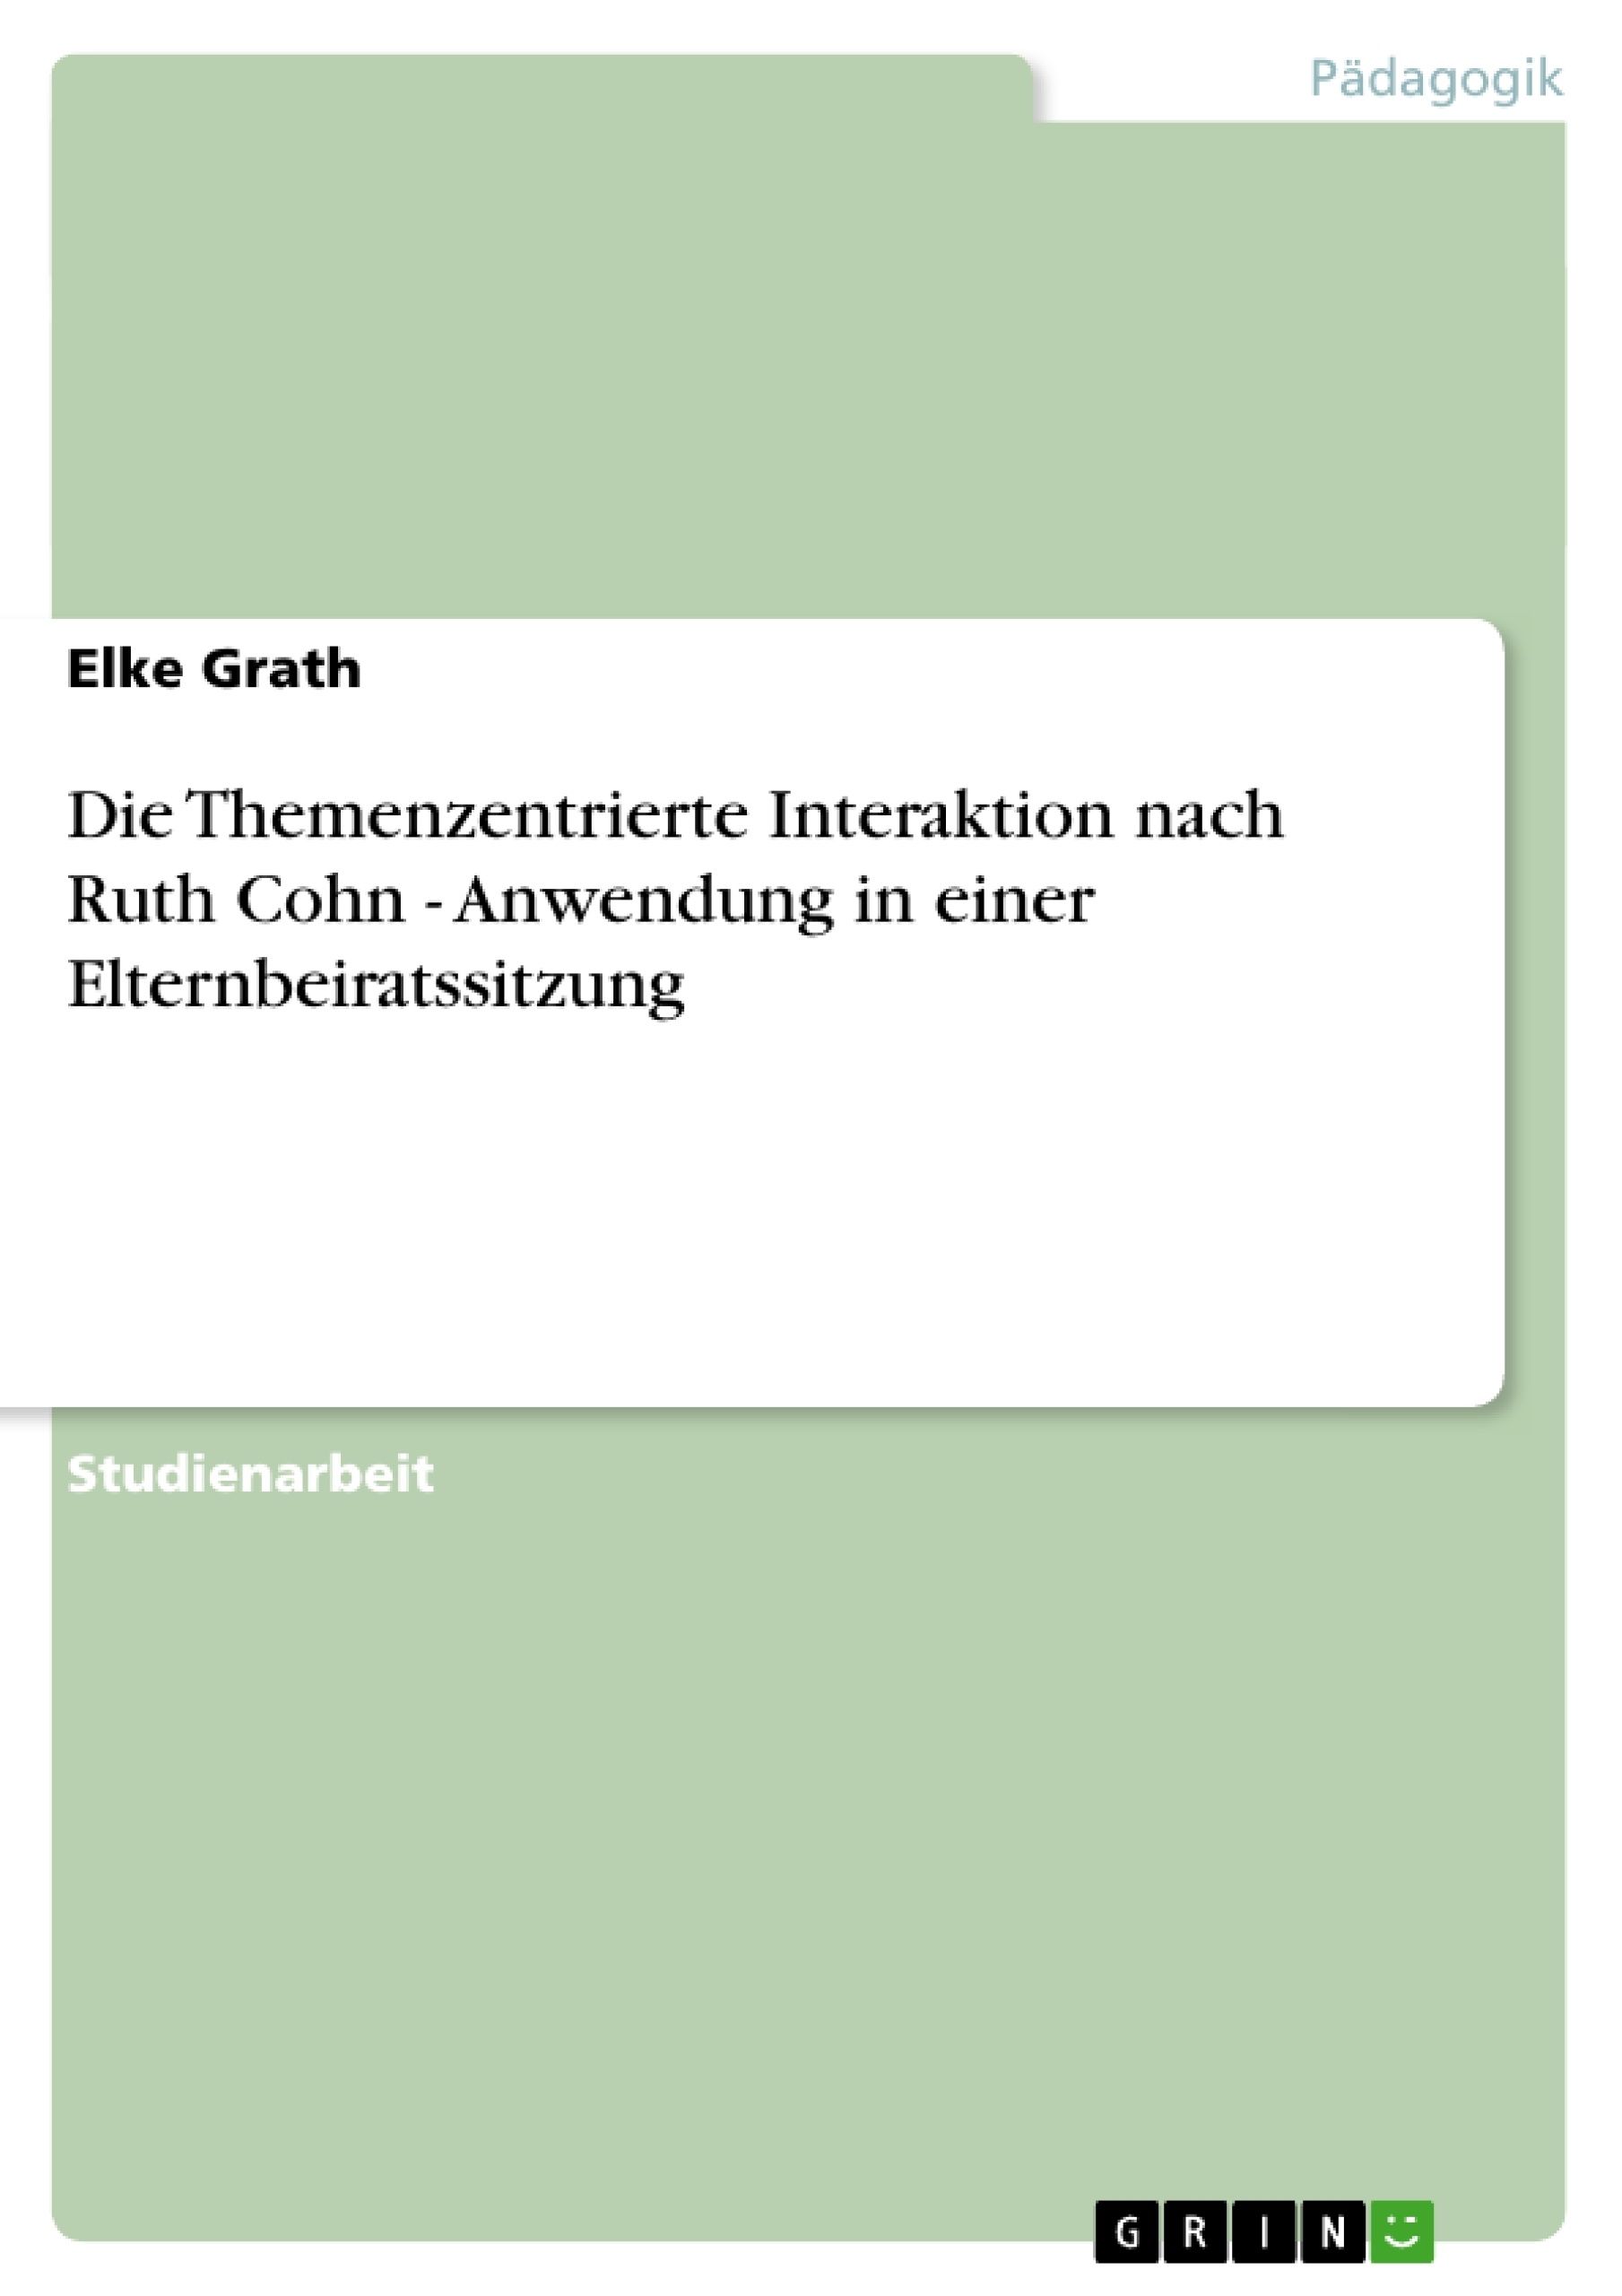 Titel: Die Themenzentrierte Interaktion nach Ruth Cohn - Anwendung in einer Elternbeiratssitzung